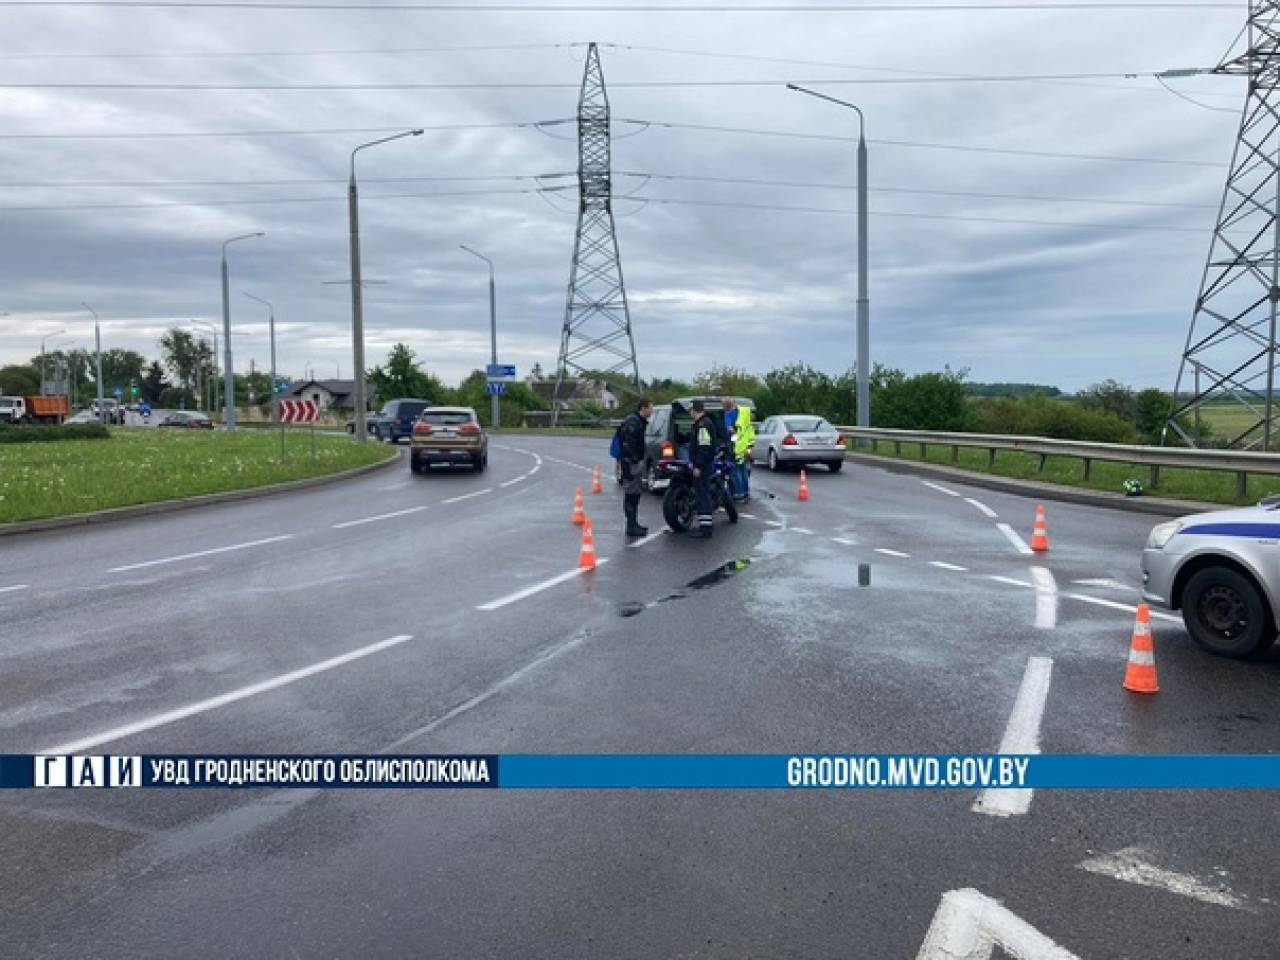 Осторожно, мотосезон в самом разгаре: в Гродно произошло бесконтактное ДТП с участием мотоциклиста